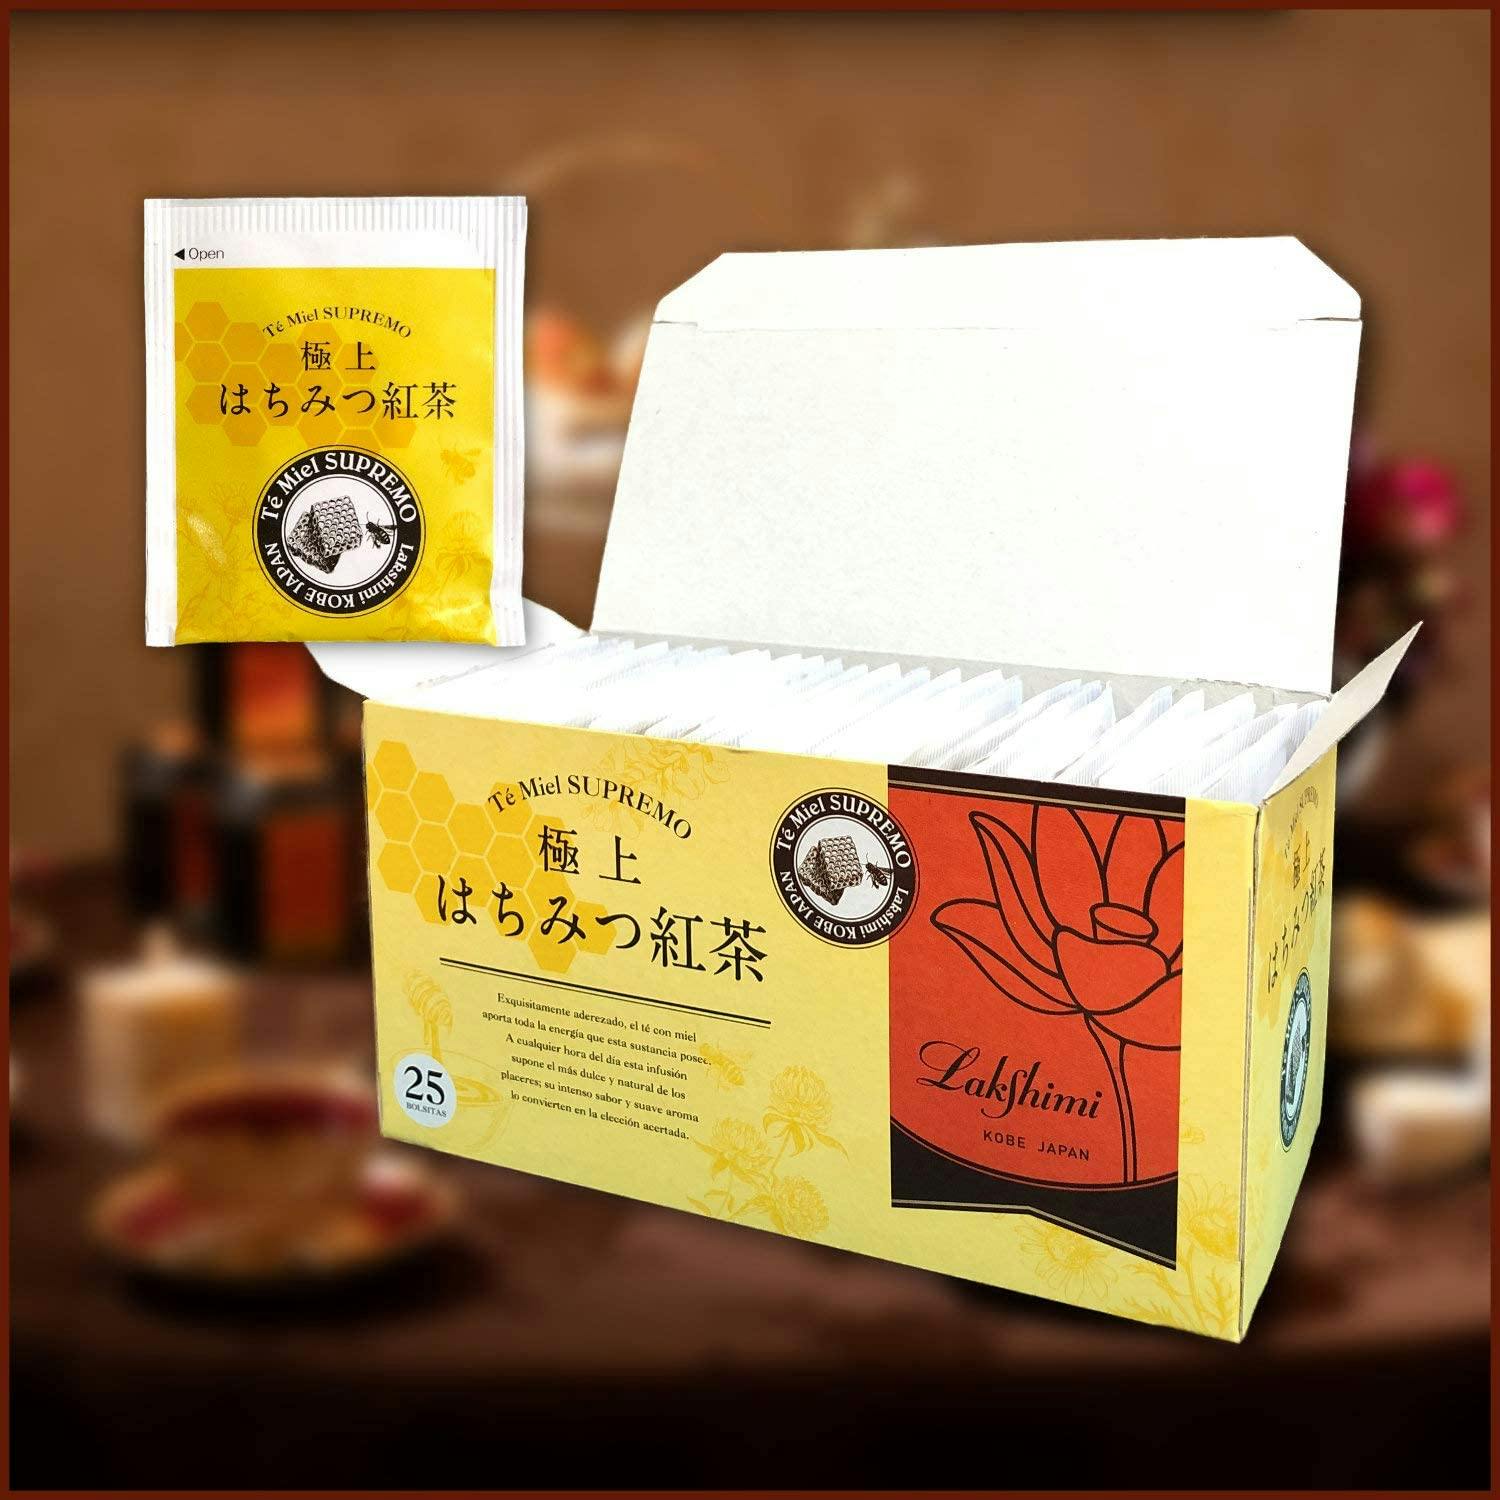 现货到  “超好喝”的日本神户限定 Lakshimi 极上 顶级 蜂蜜红茶 袋装 25袋